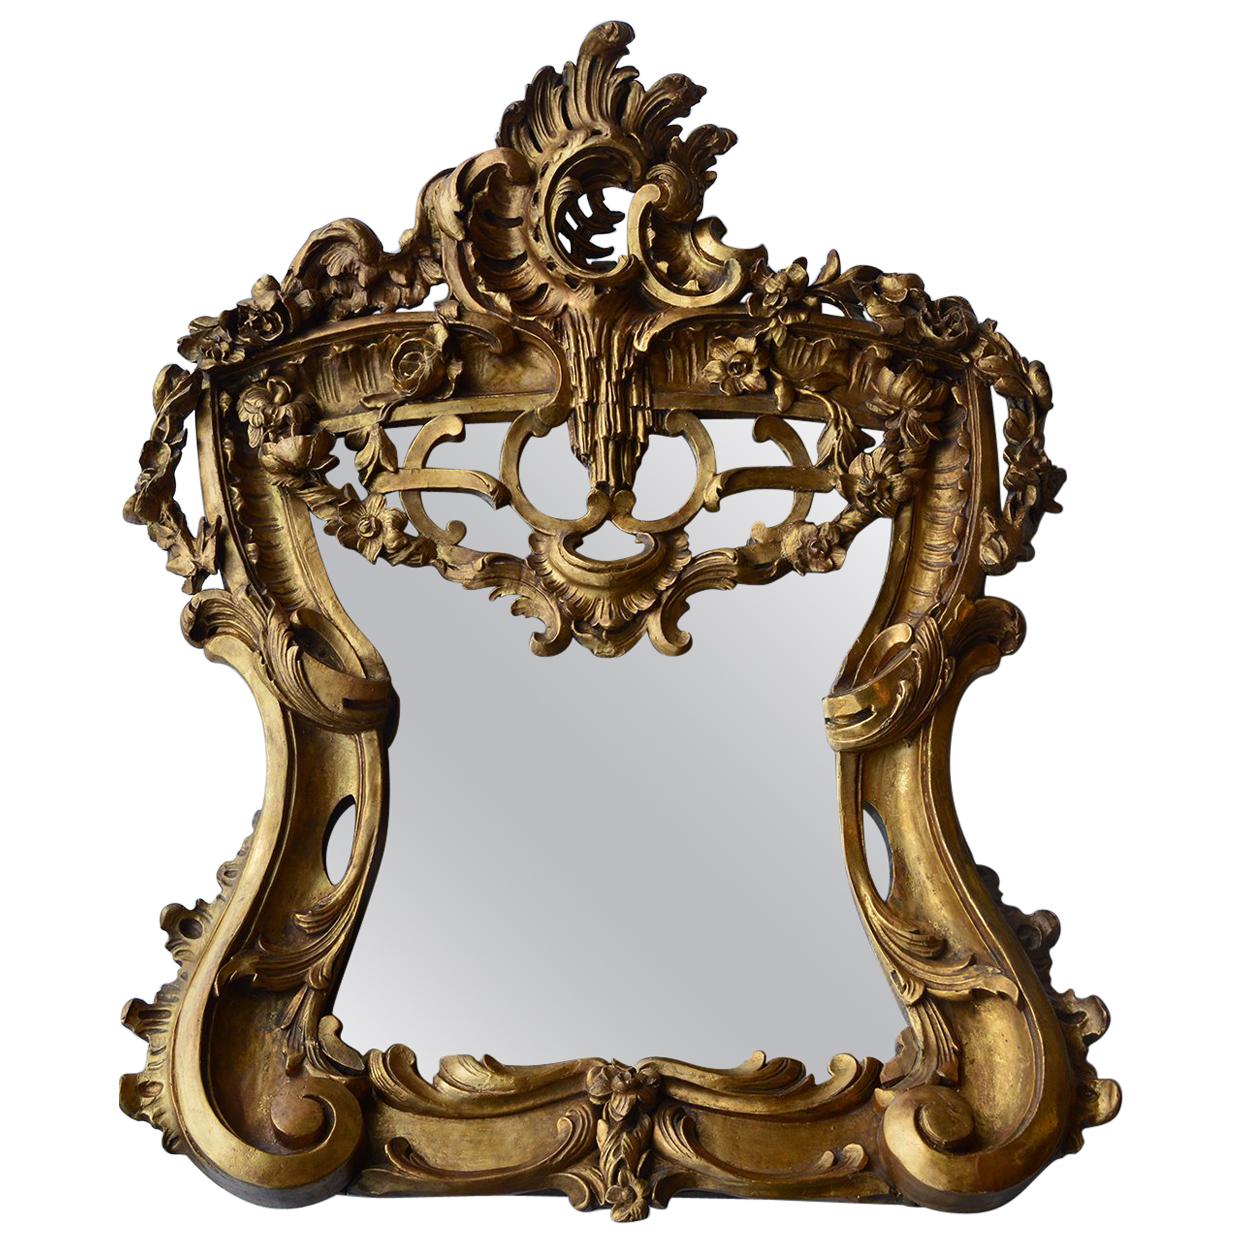 Handgeschnitzter Holzspiegel aus dem späten 18. Jahrhundert